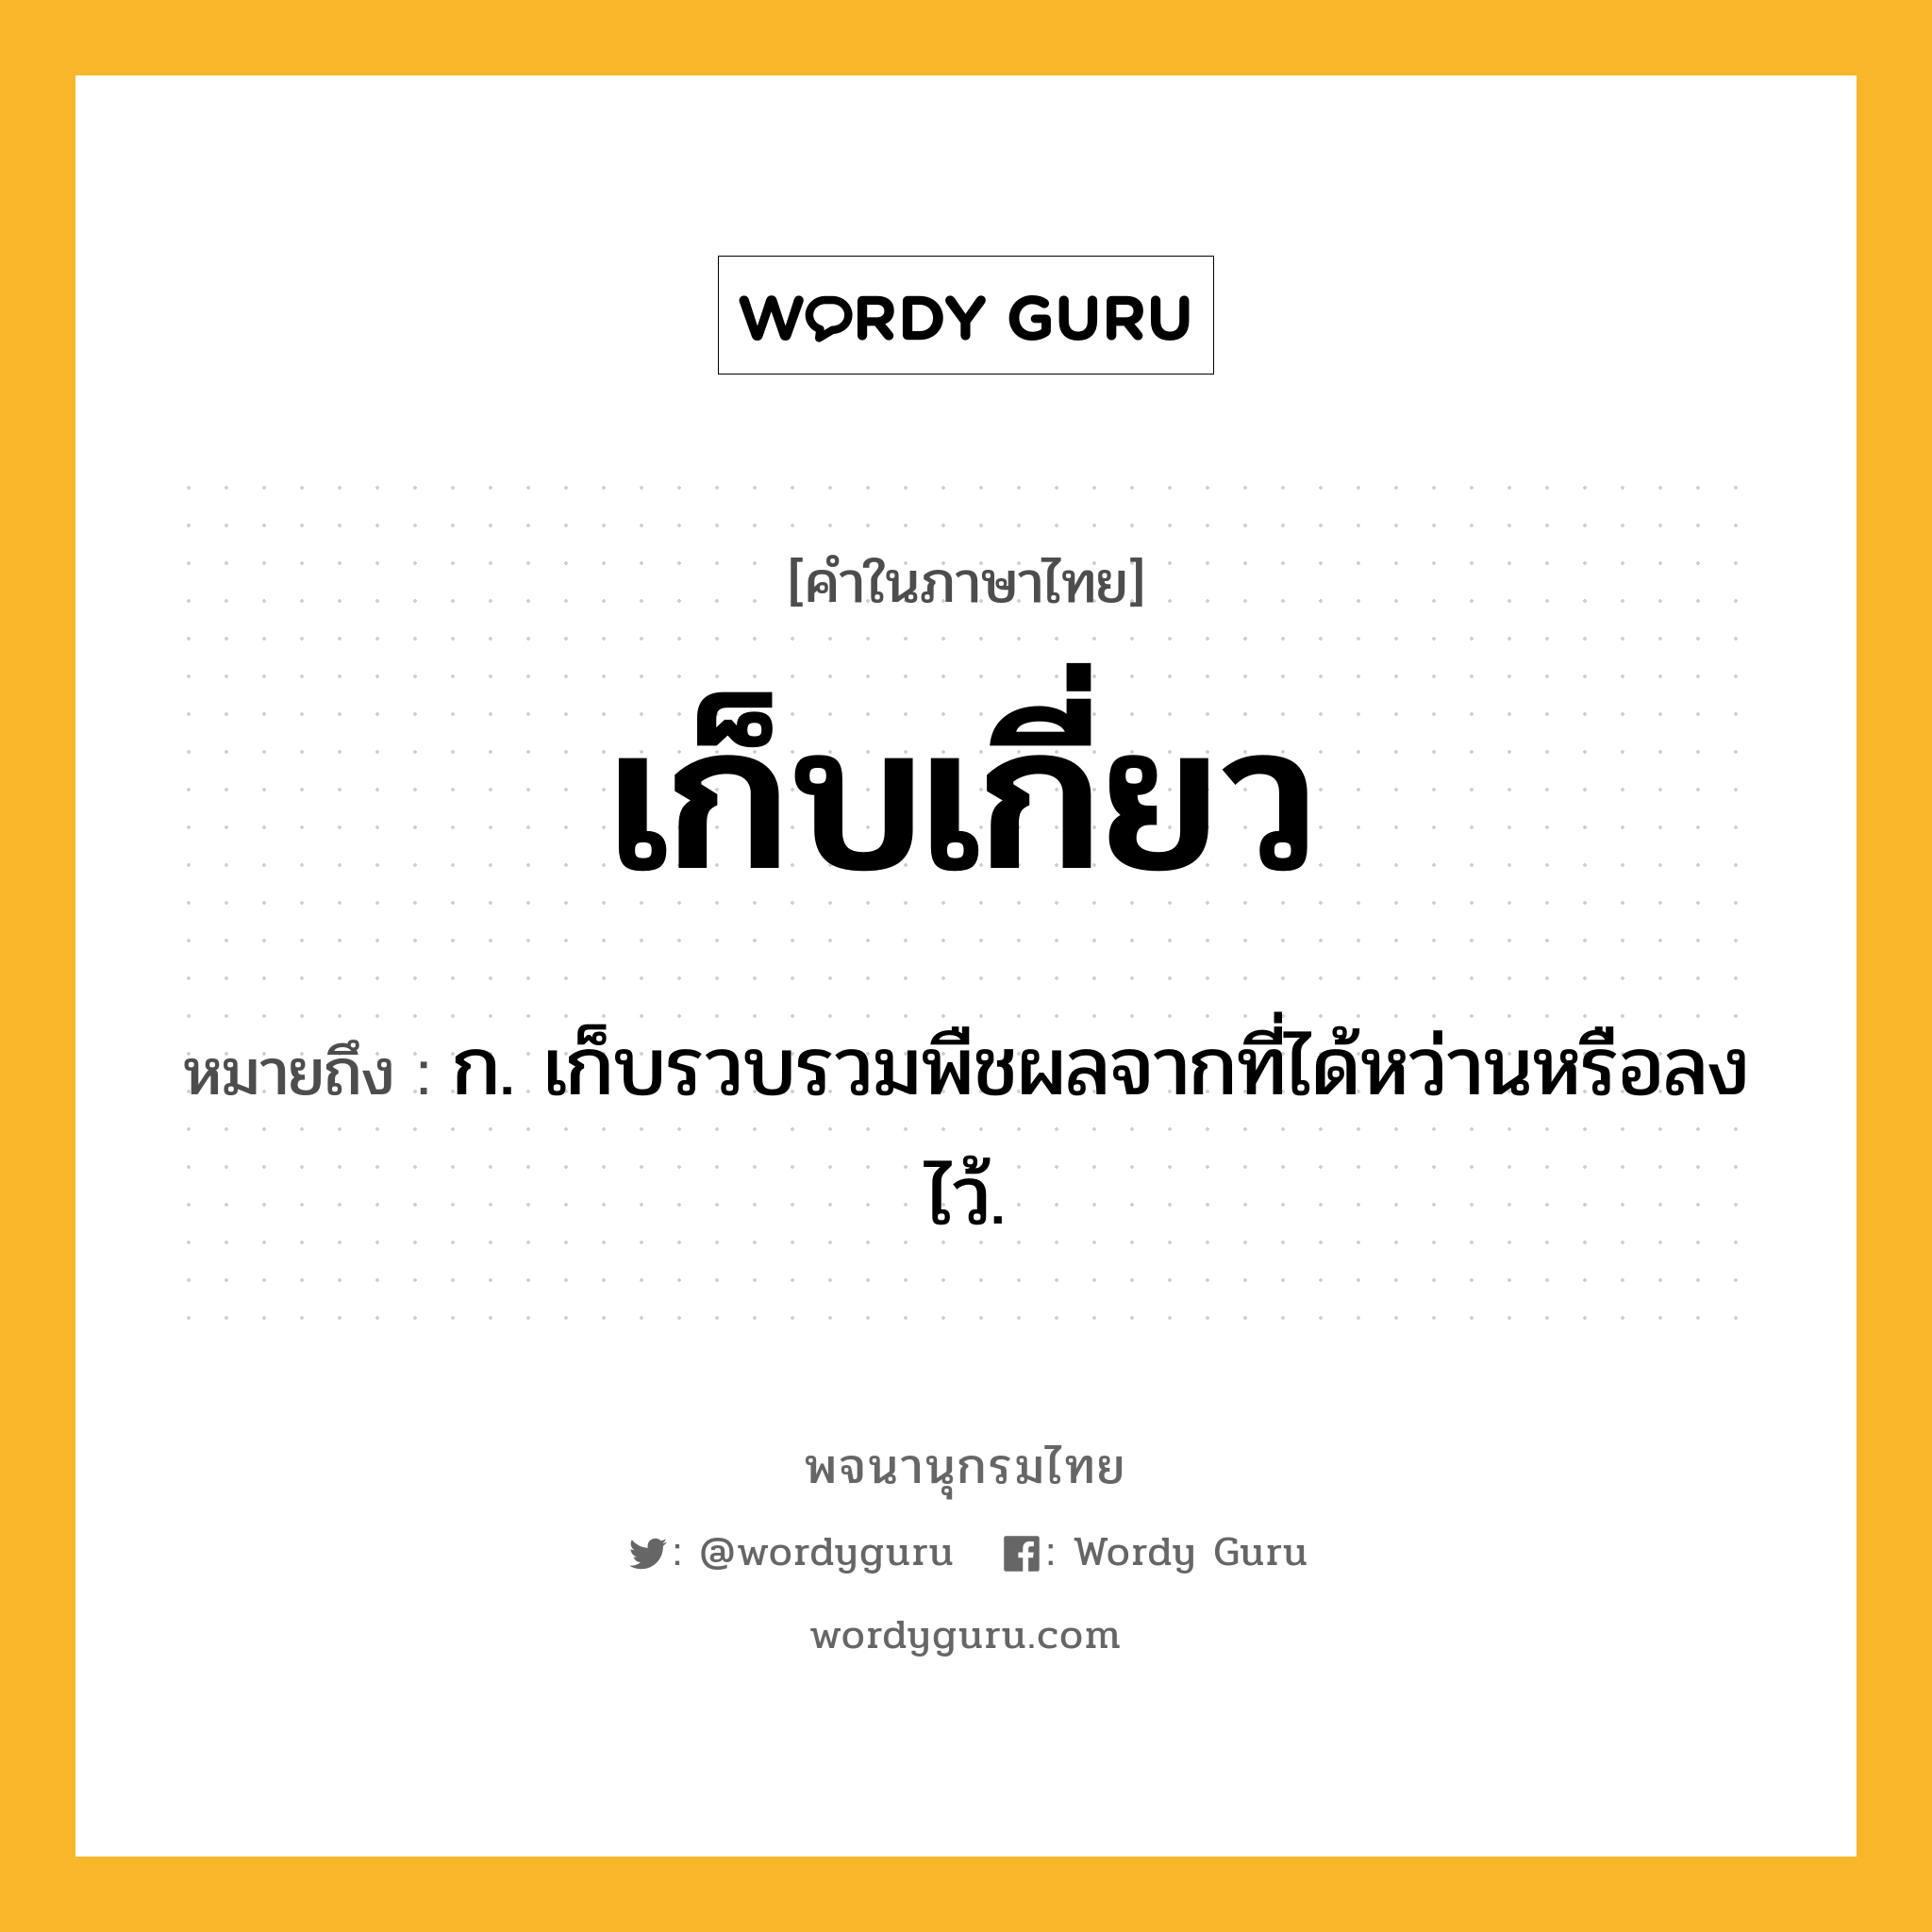 เก็บเกี่ยว หมายถึงอะไร?, คำในภาษาไทย เก็บเกี่ยว หมายถึง ก. เก็บรวบรวมพืชผลจากที่ได้หว่านหรือลงไว้.